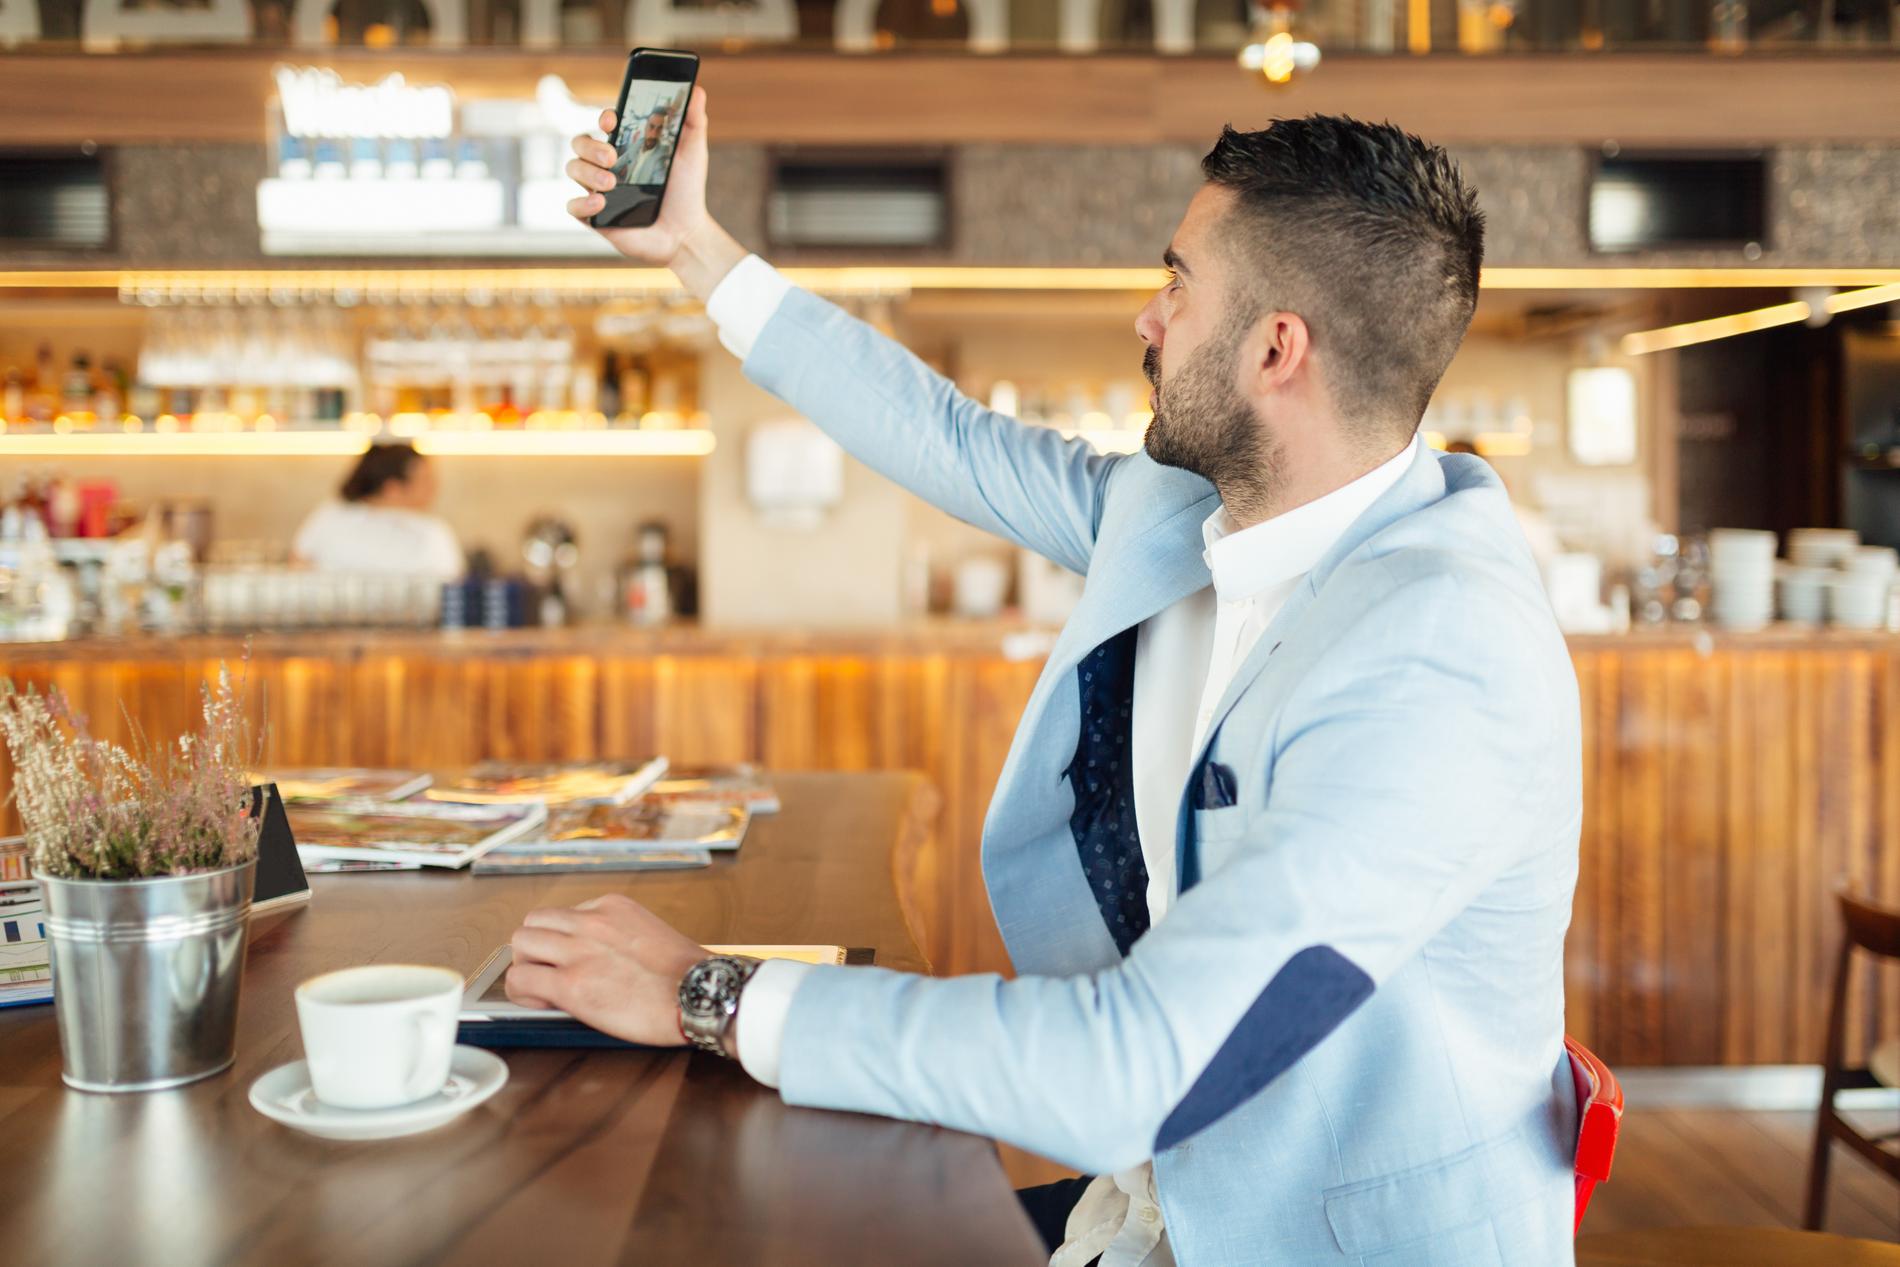 Foto-vänliga restaurangmiljöer där gästerna kan ta perfekta selfies kommer stort 2022.